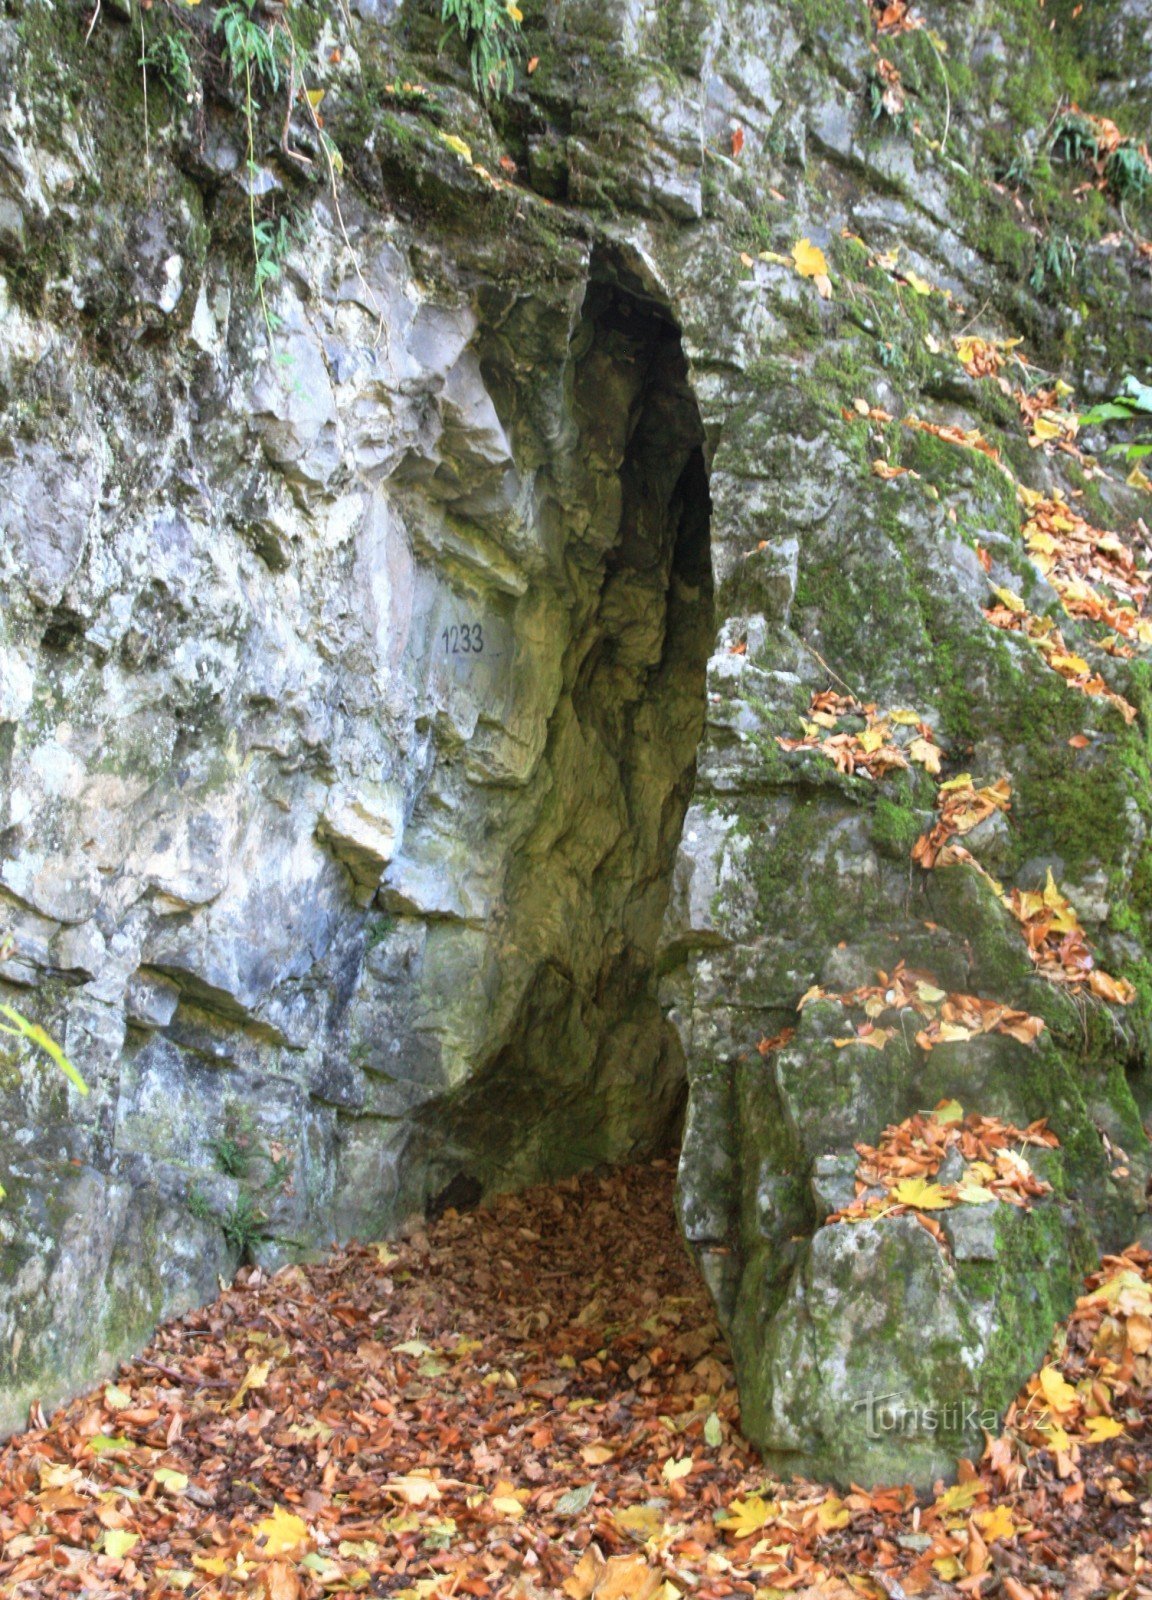 Une des autres grottes au-dessus de Švýcárna dans le Josefovské údolí